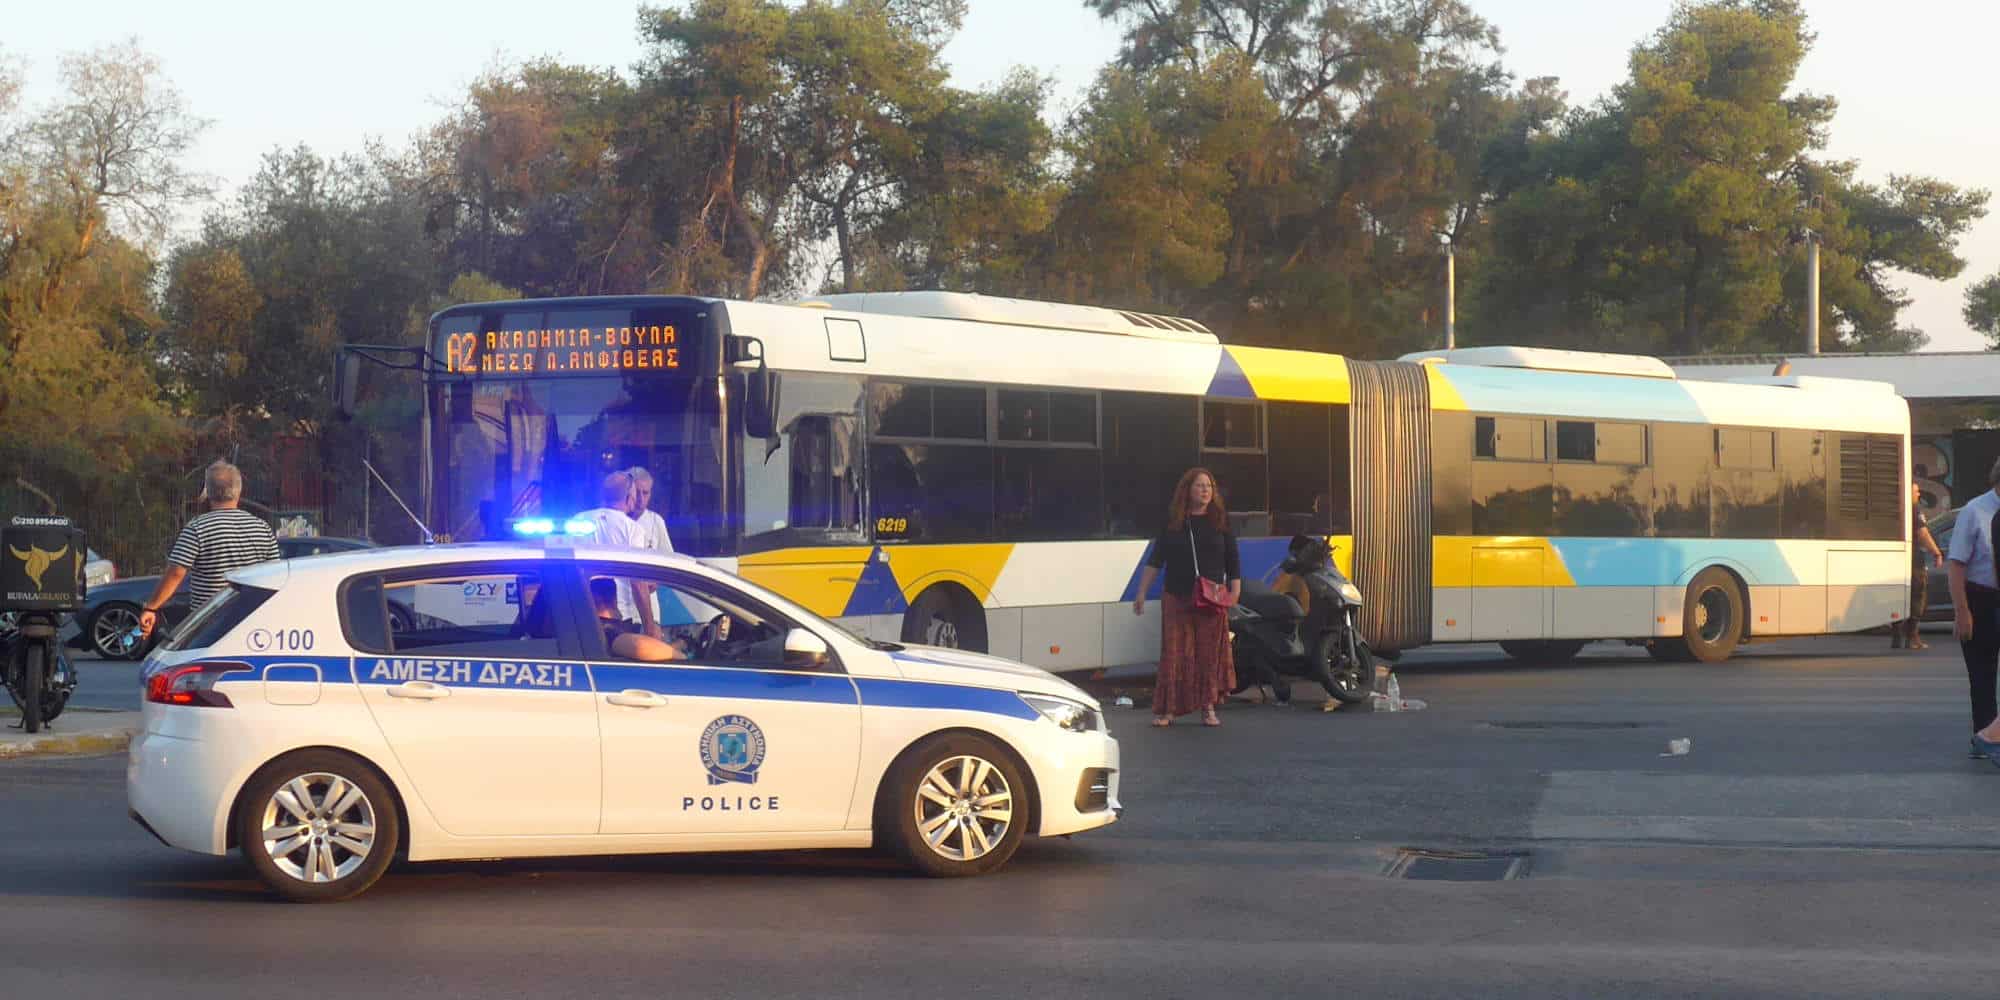 Τροχαίο στην Παραλιακή στη Βούλα. Αστικό λεωφορείο συγκρούστηκε με μηχανάκι